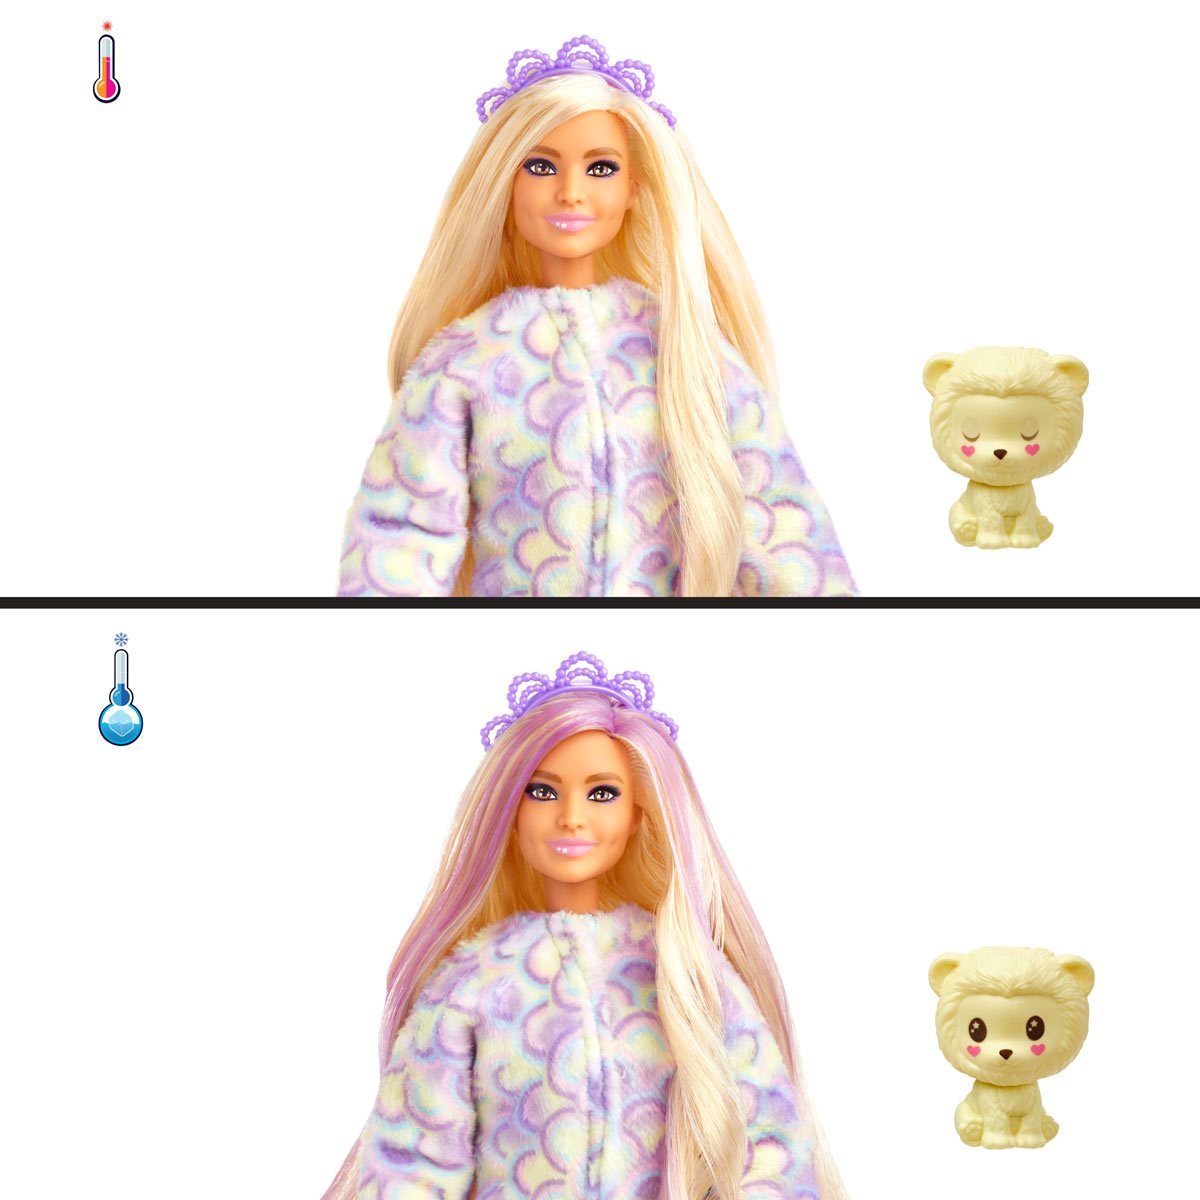 Barbie cutie reveal serie cozy surt